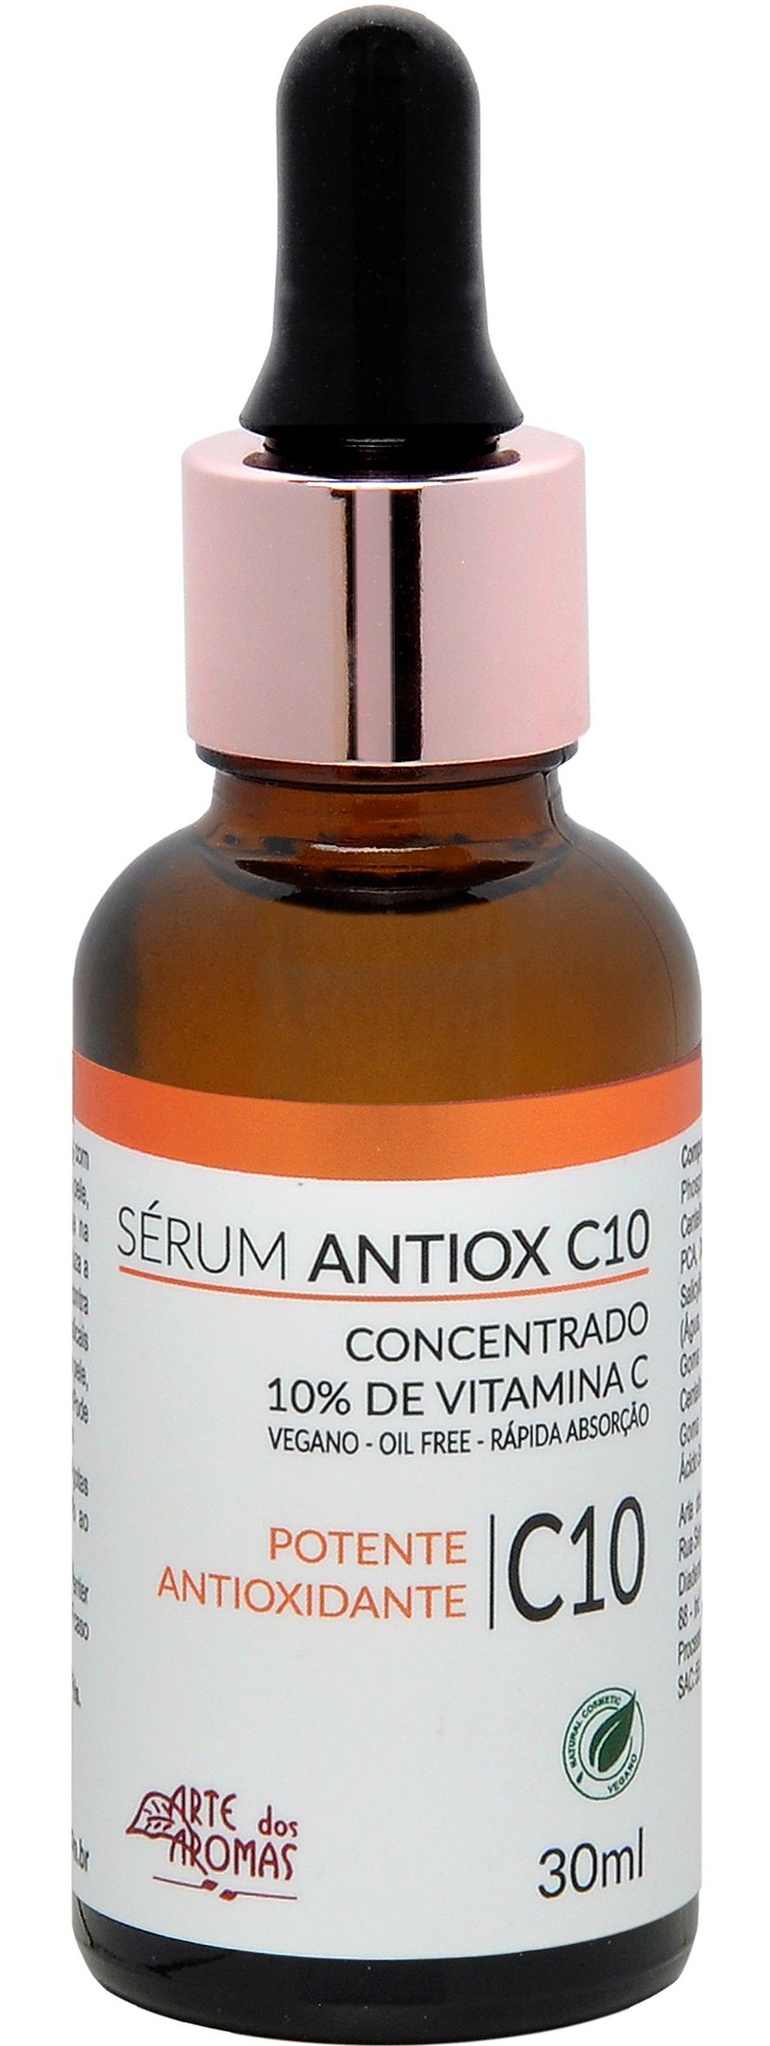 Arte dos Aromas Sérum Antiox C10 Vit C 10%